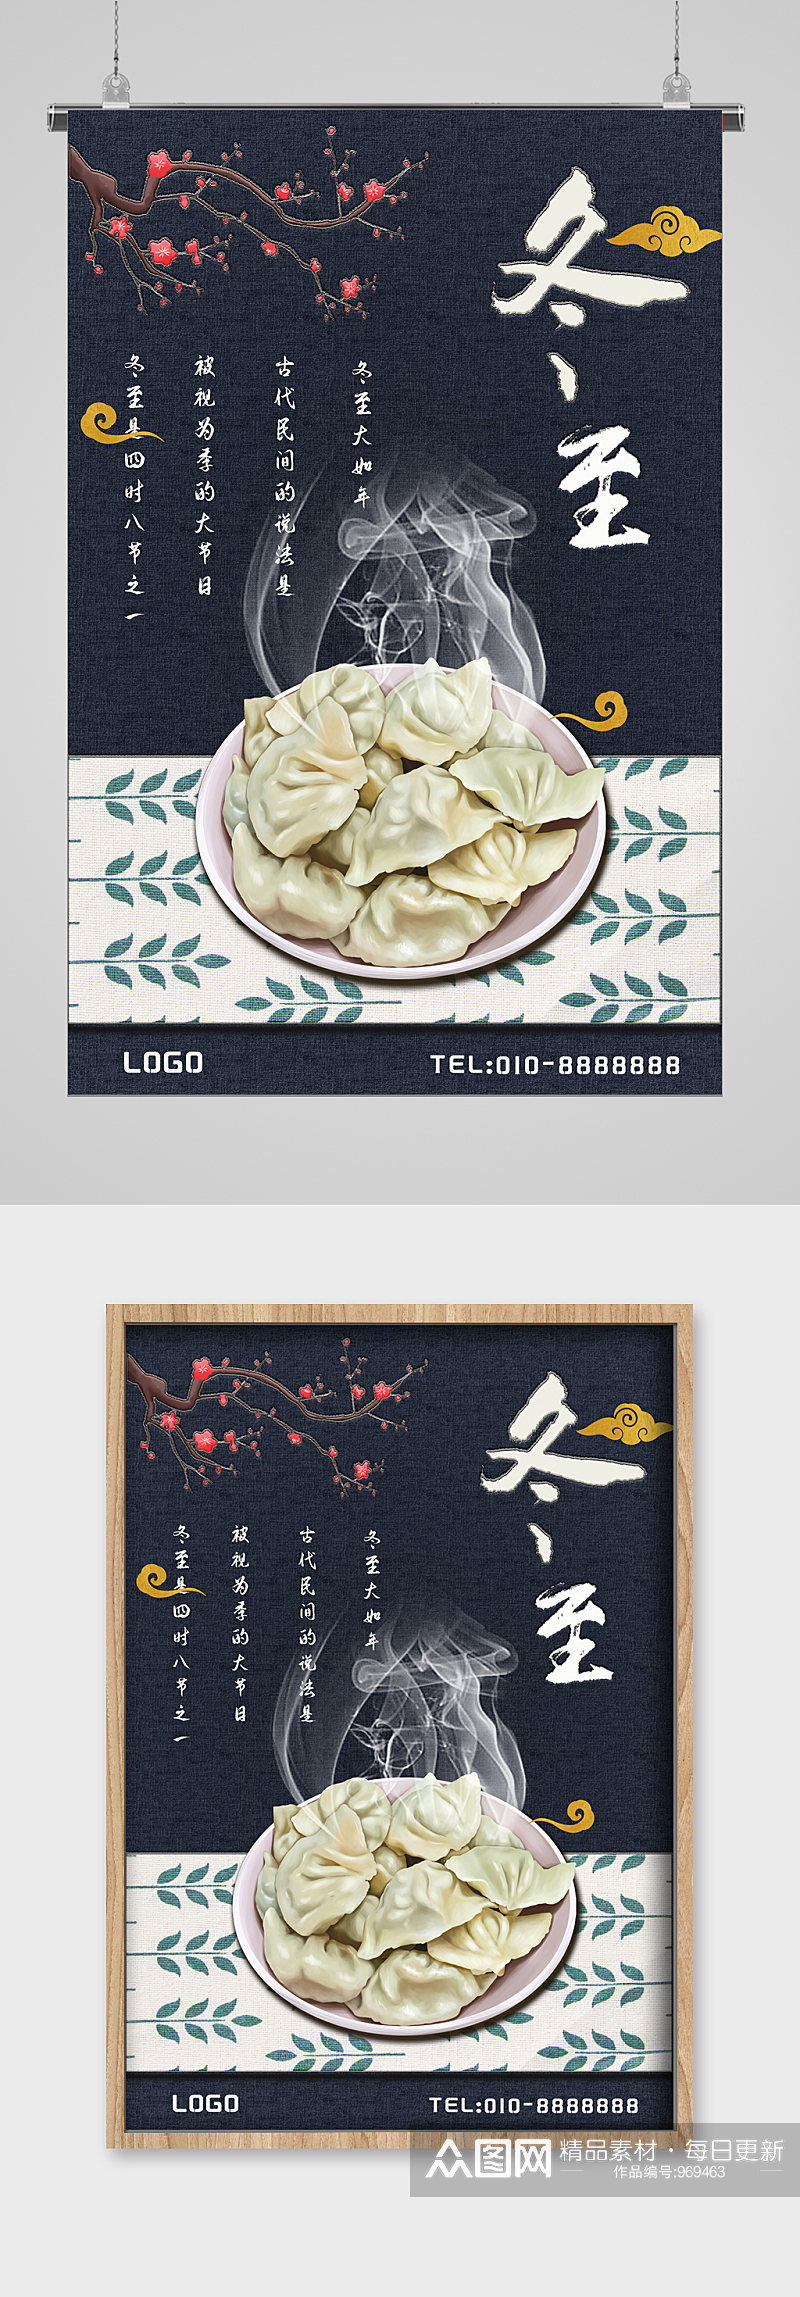 吃饺子的季节冬至节气宣传海报素材